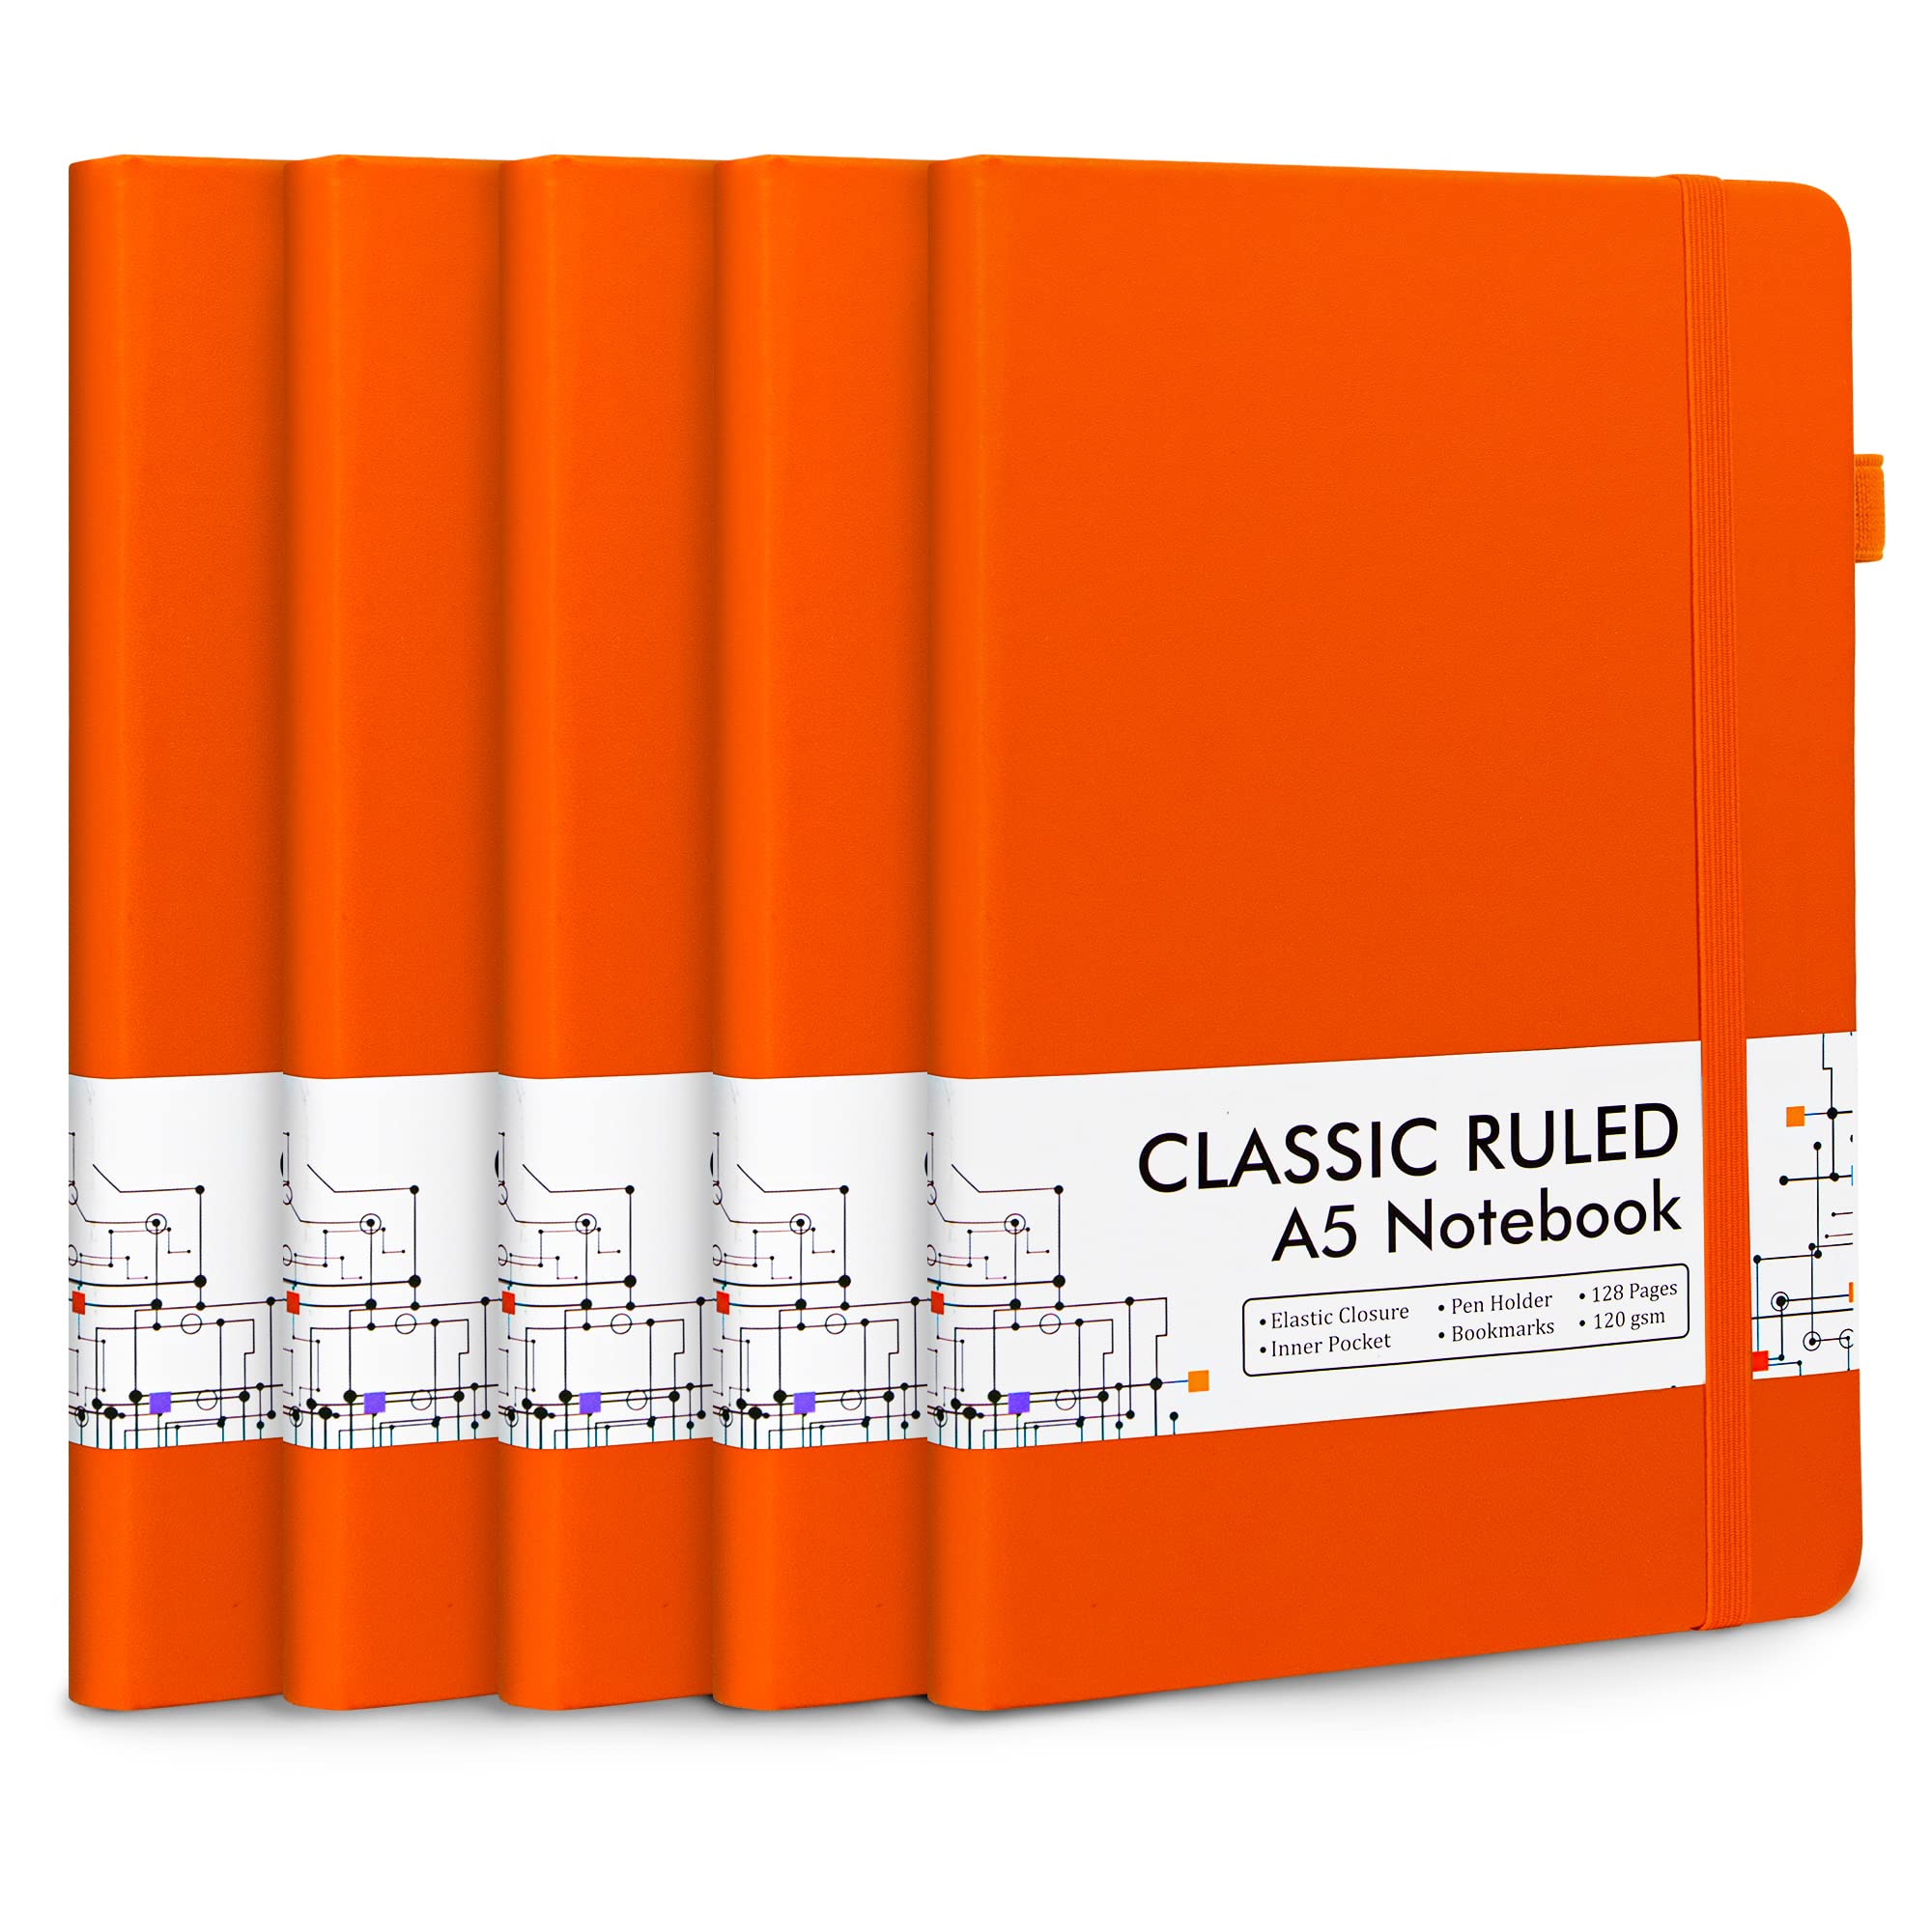 Feela 5 Pack Journal Notebook Bulk For School, Feela Hardcover Business Notebooks Classic Ruled Lined Journals With Pen Holder For Wor